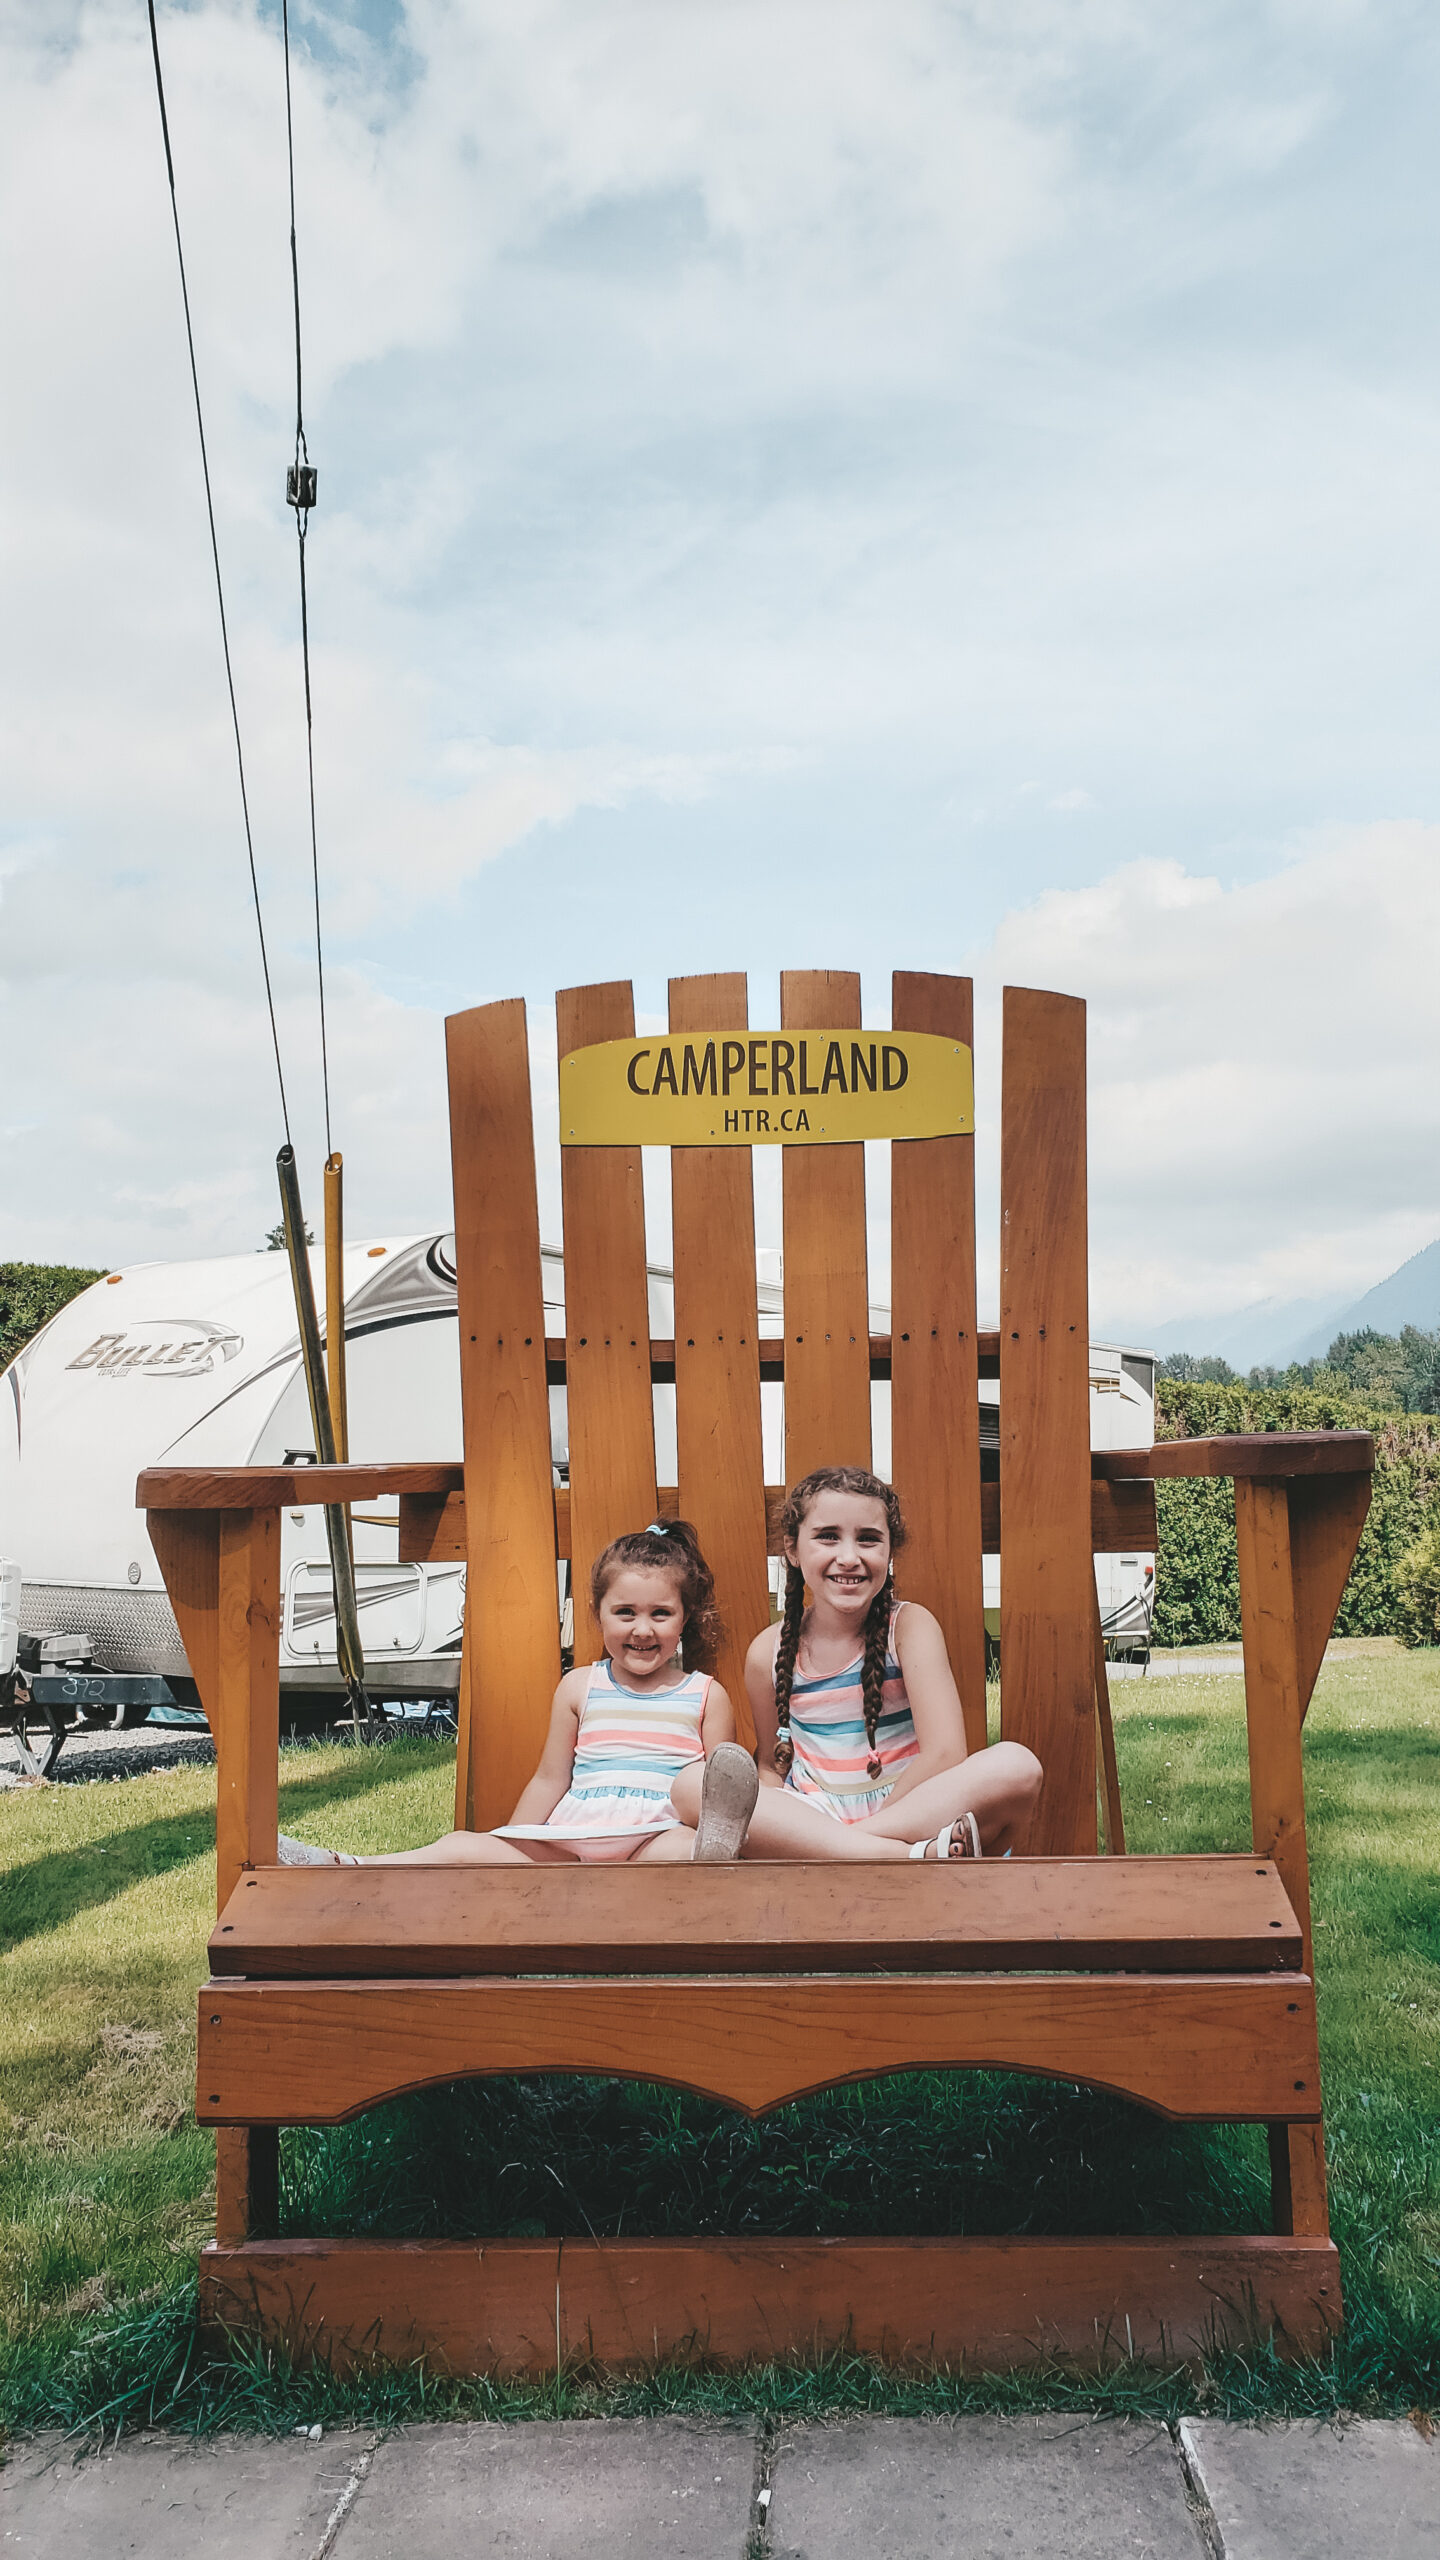 Camperland RV Resort (Bridal Falls)